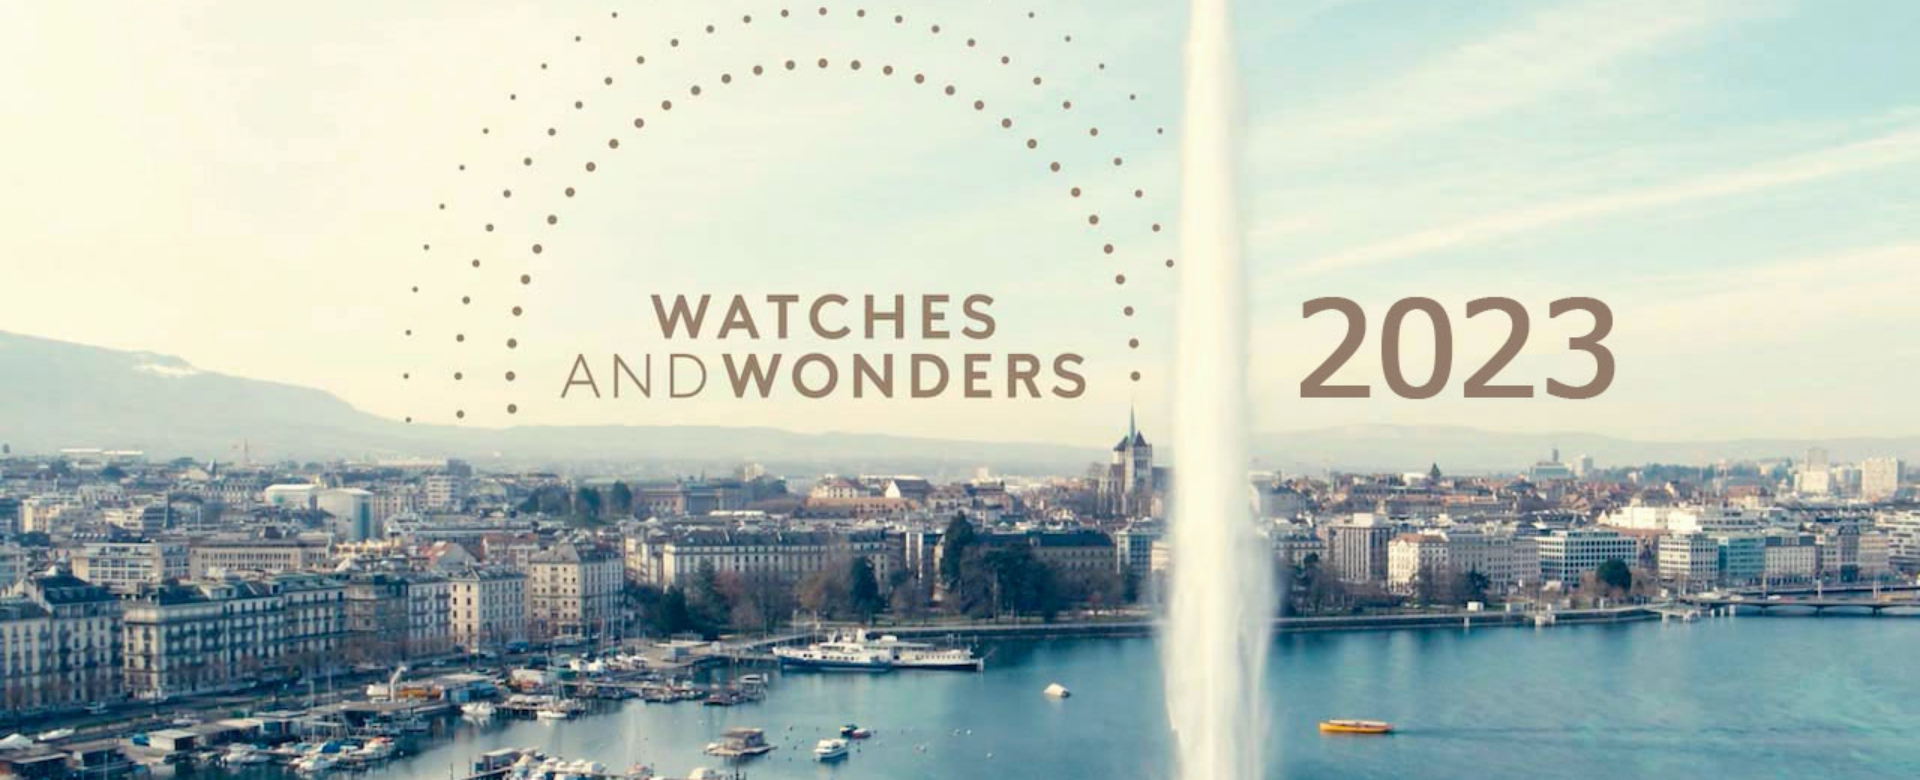 Watches & Wonders 2023 ấn định thời gian tổ chức cùng quy mô ấn tượng